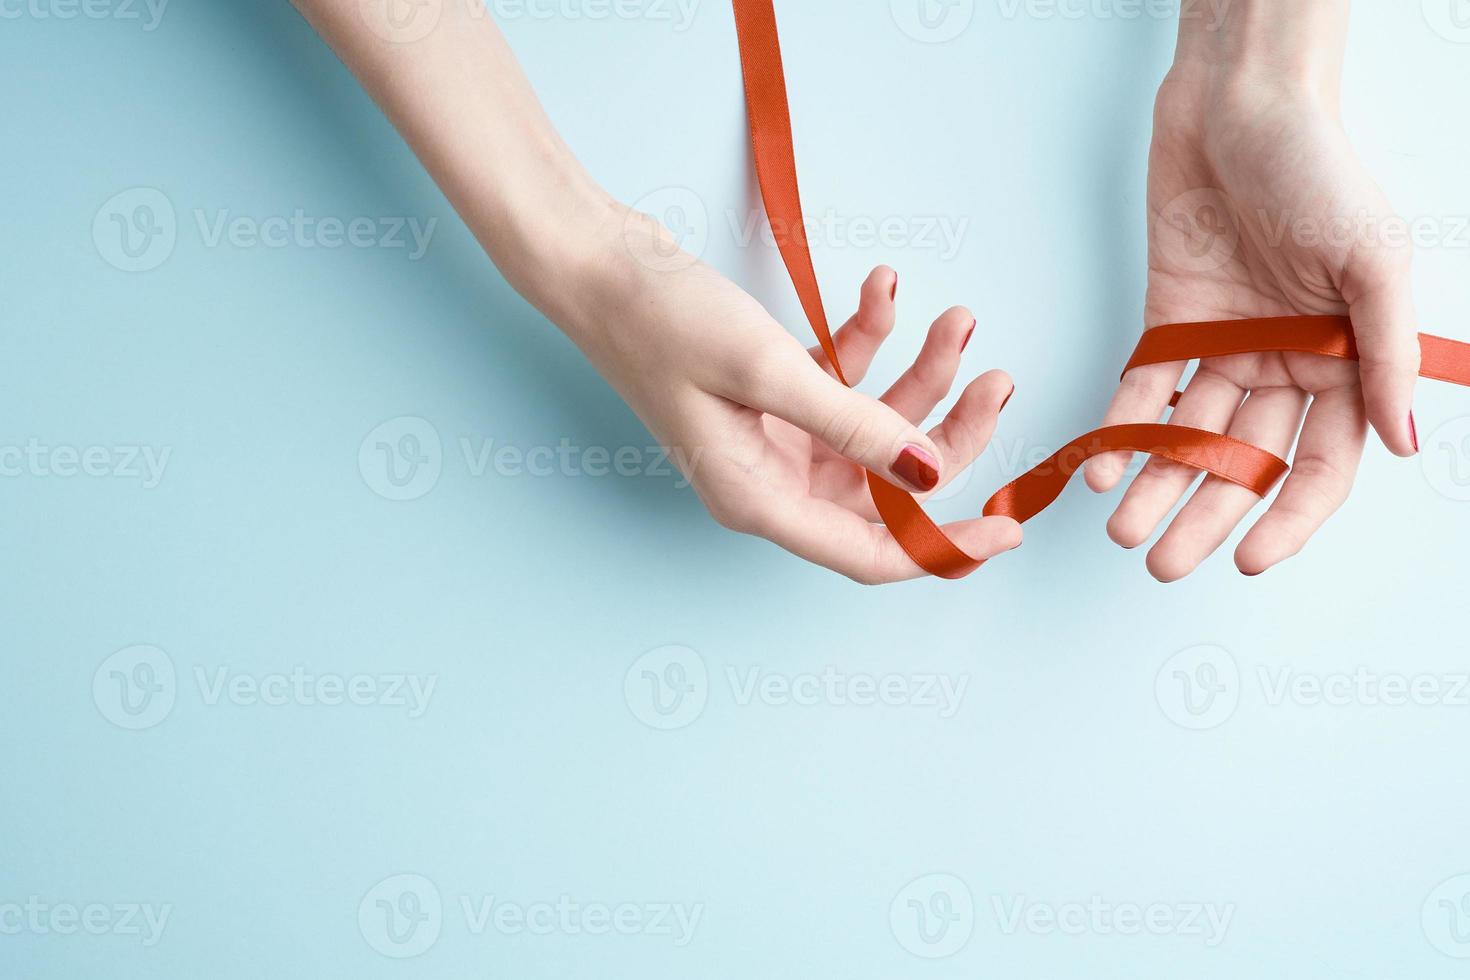 mãos de mulher segurando fita vermelha, conceito de design em fundo água-marinha, copie o espaço foto